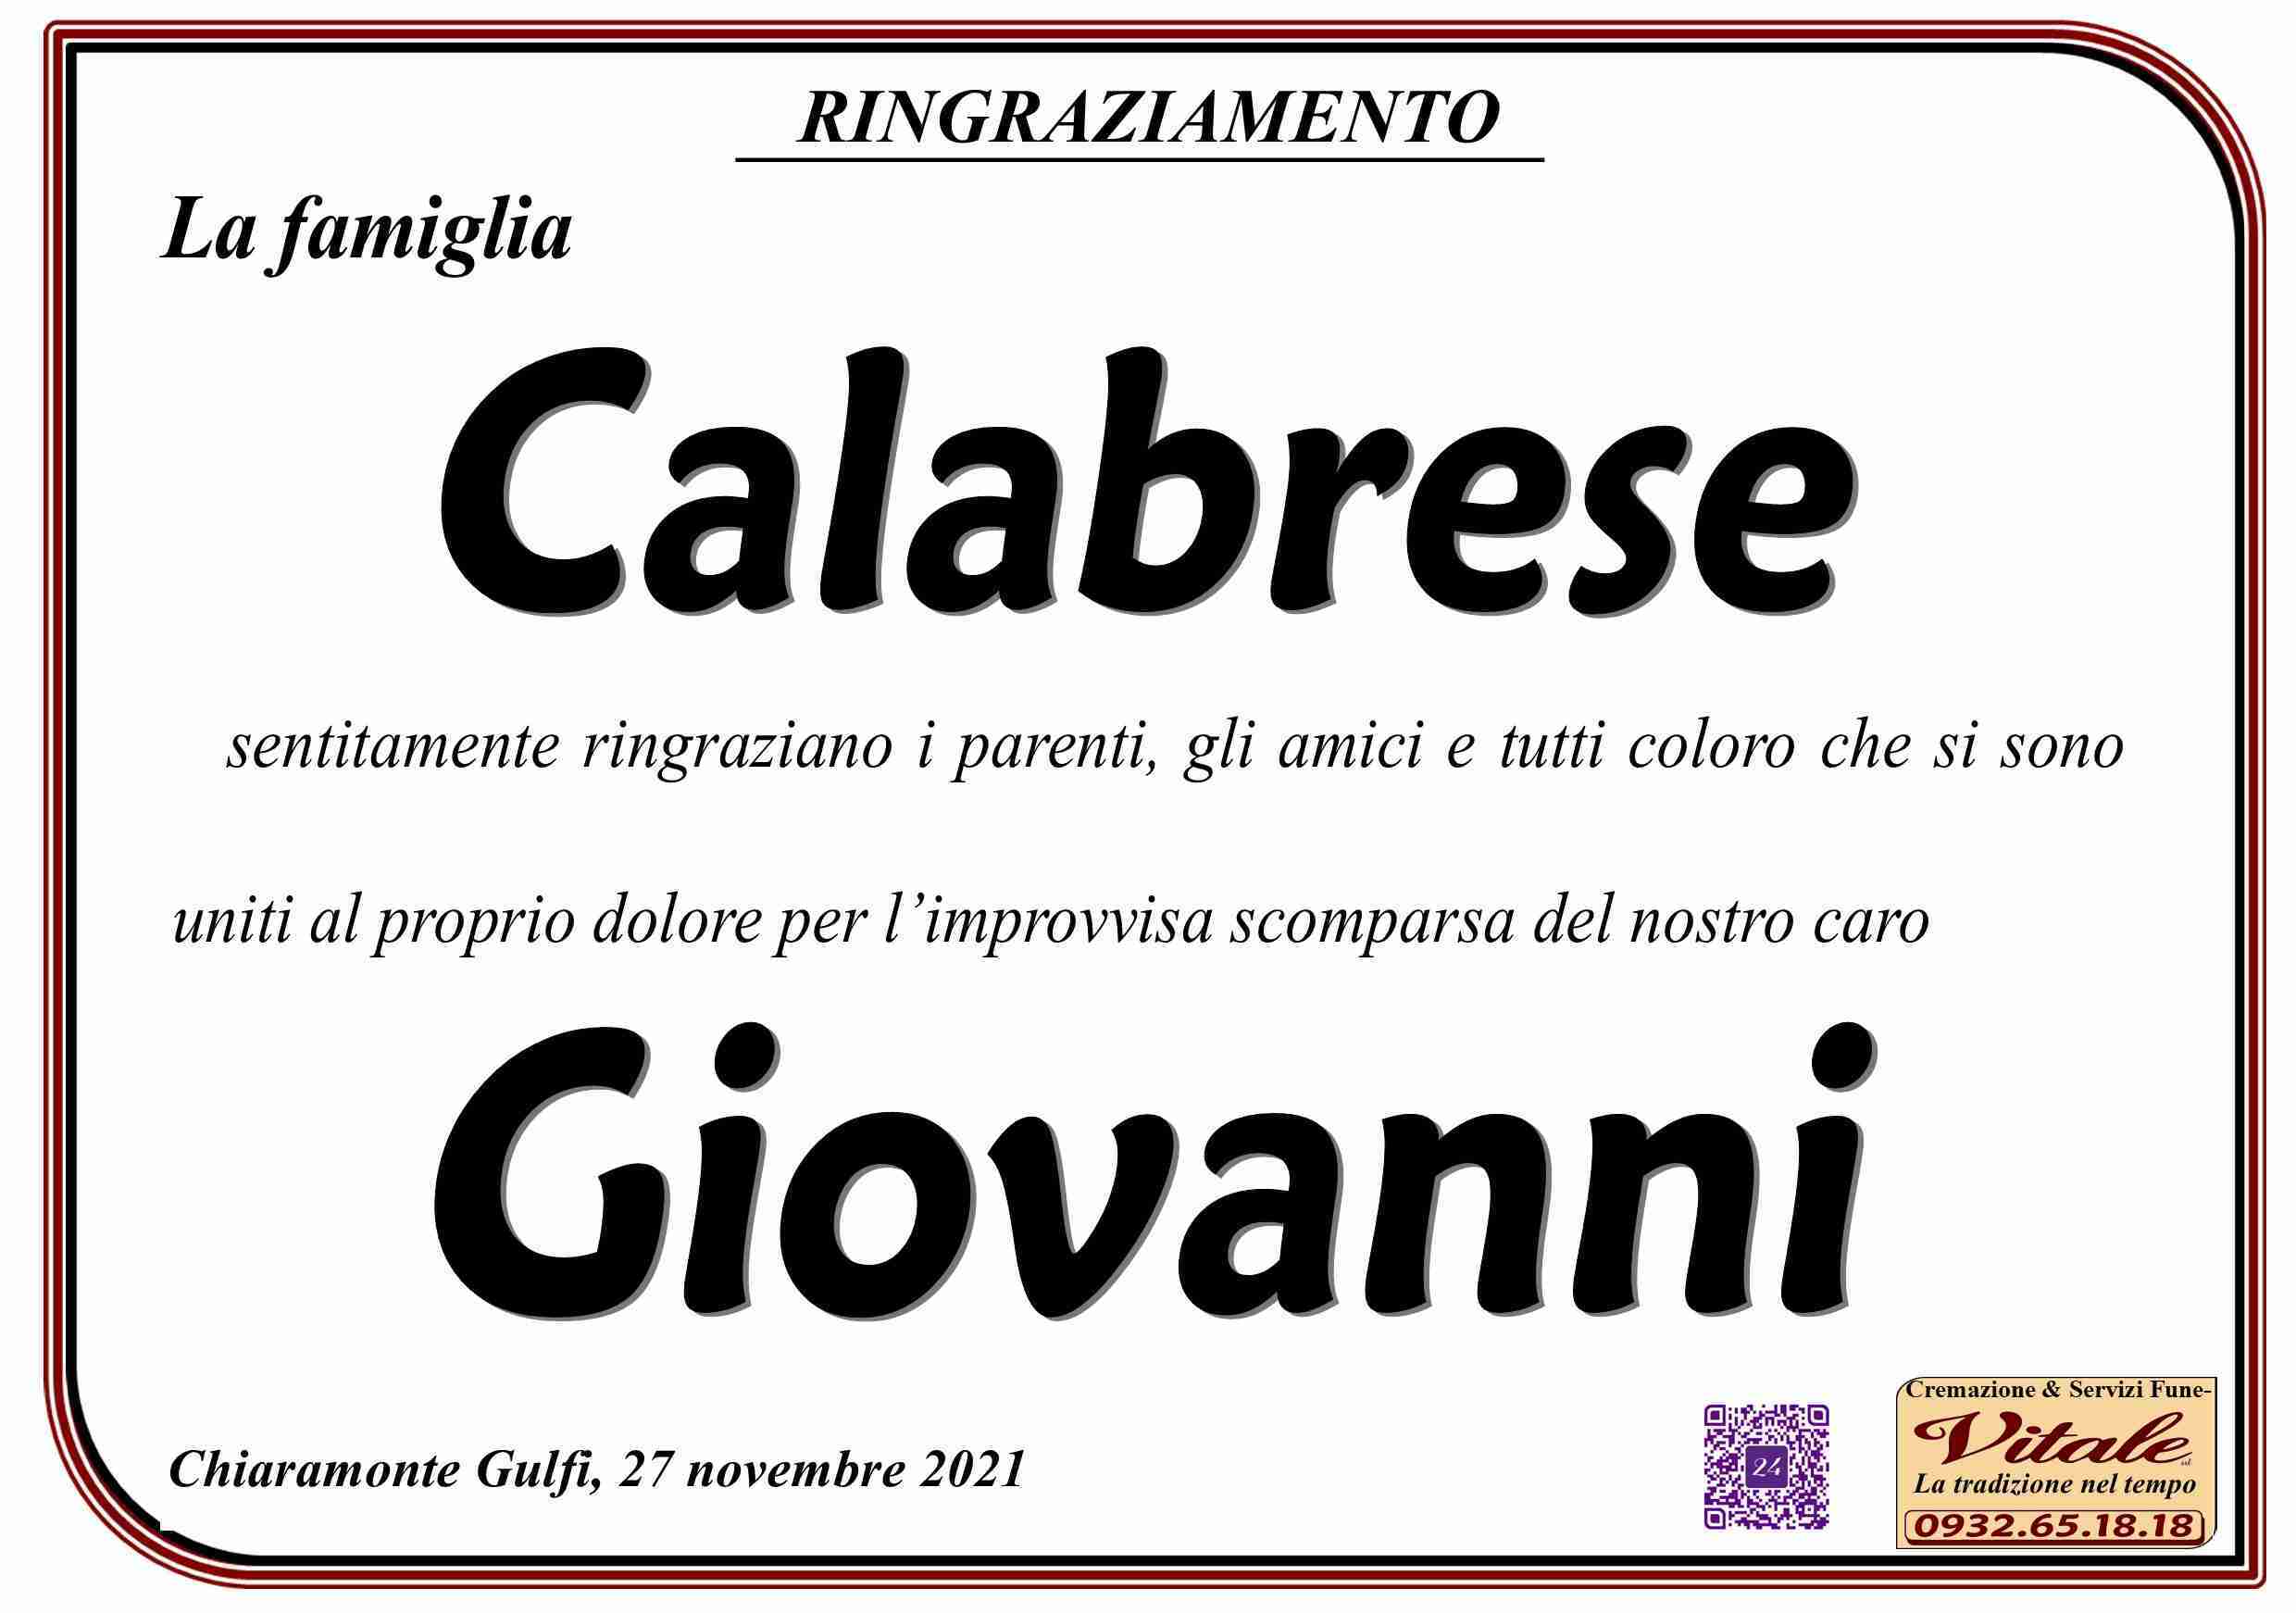 Giovanni Calabrese